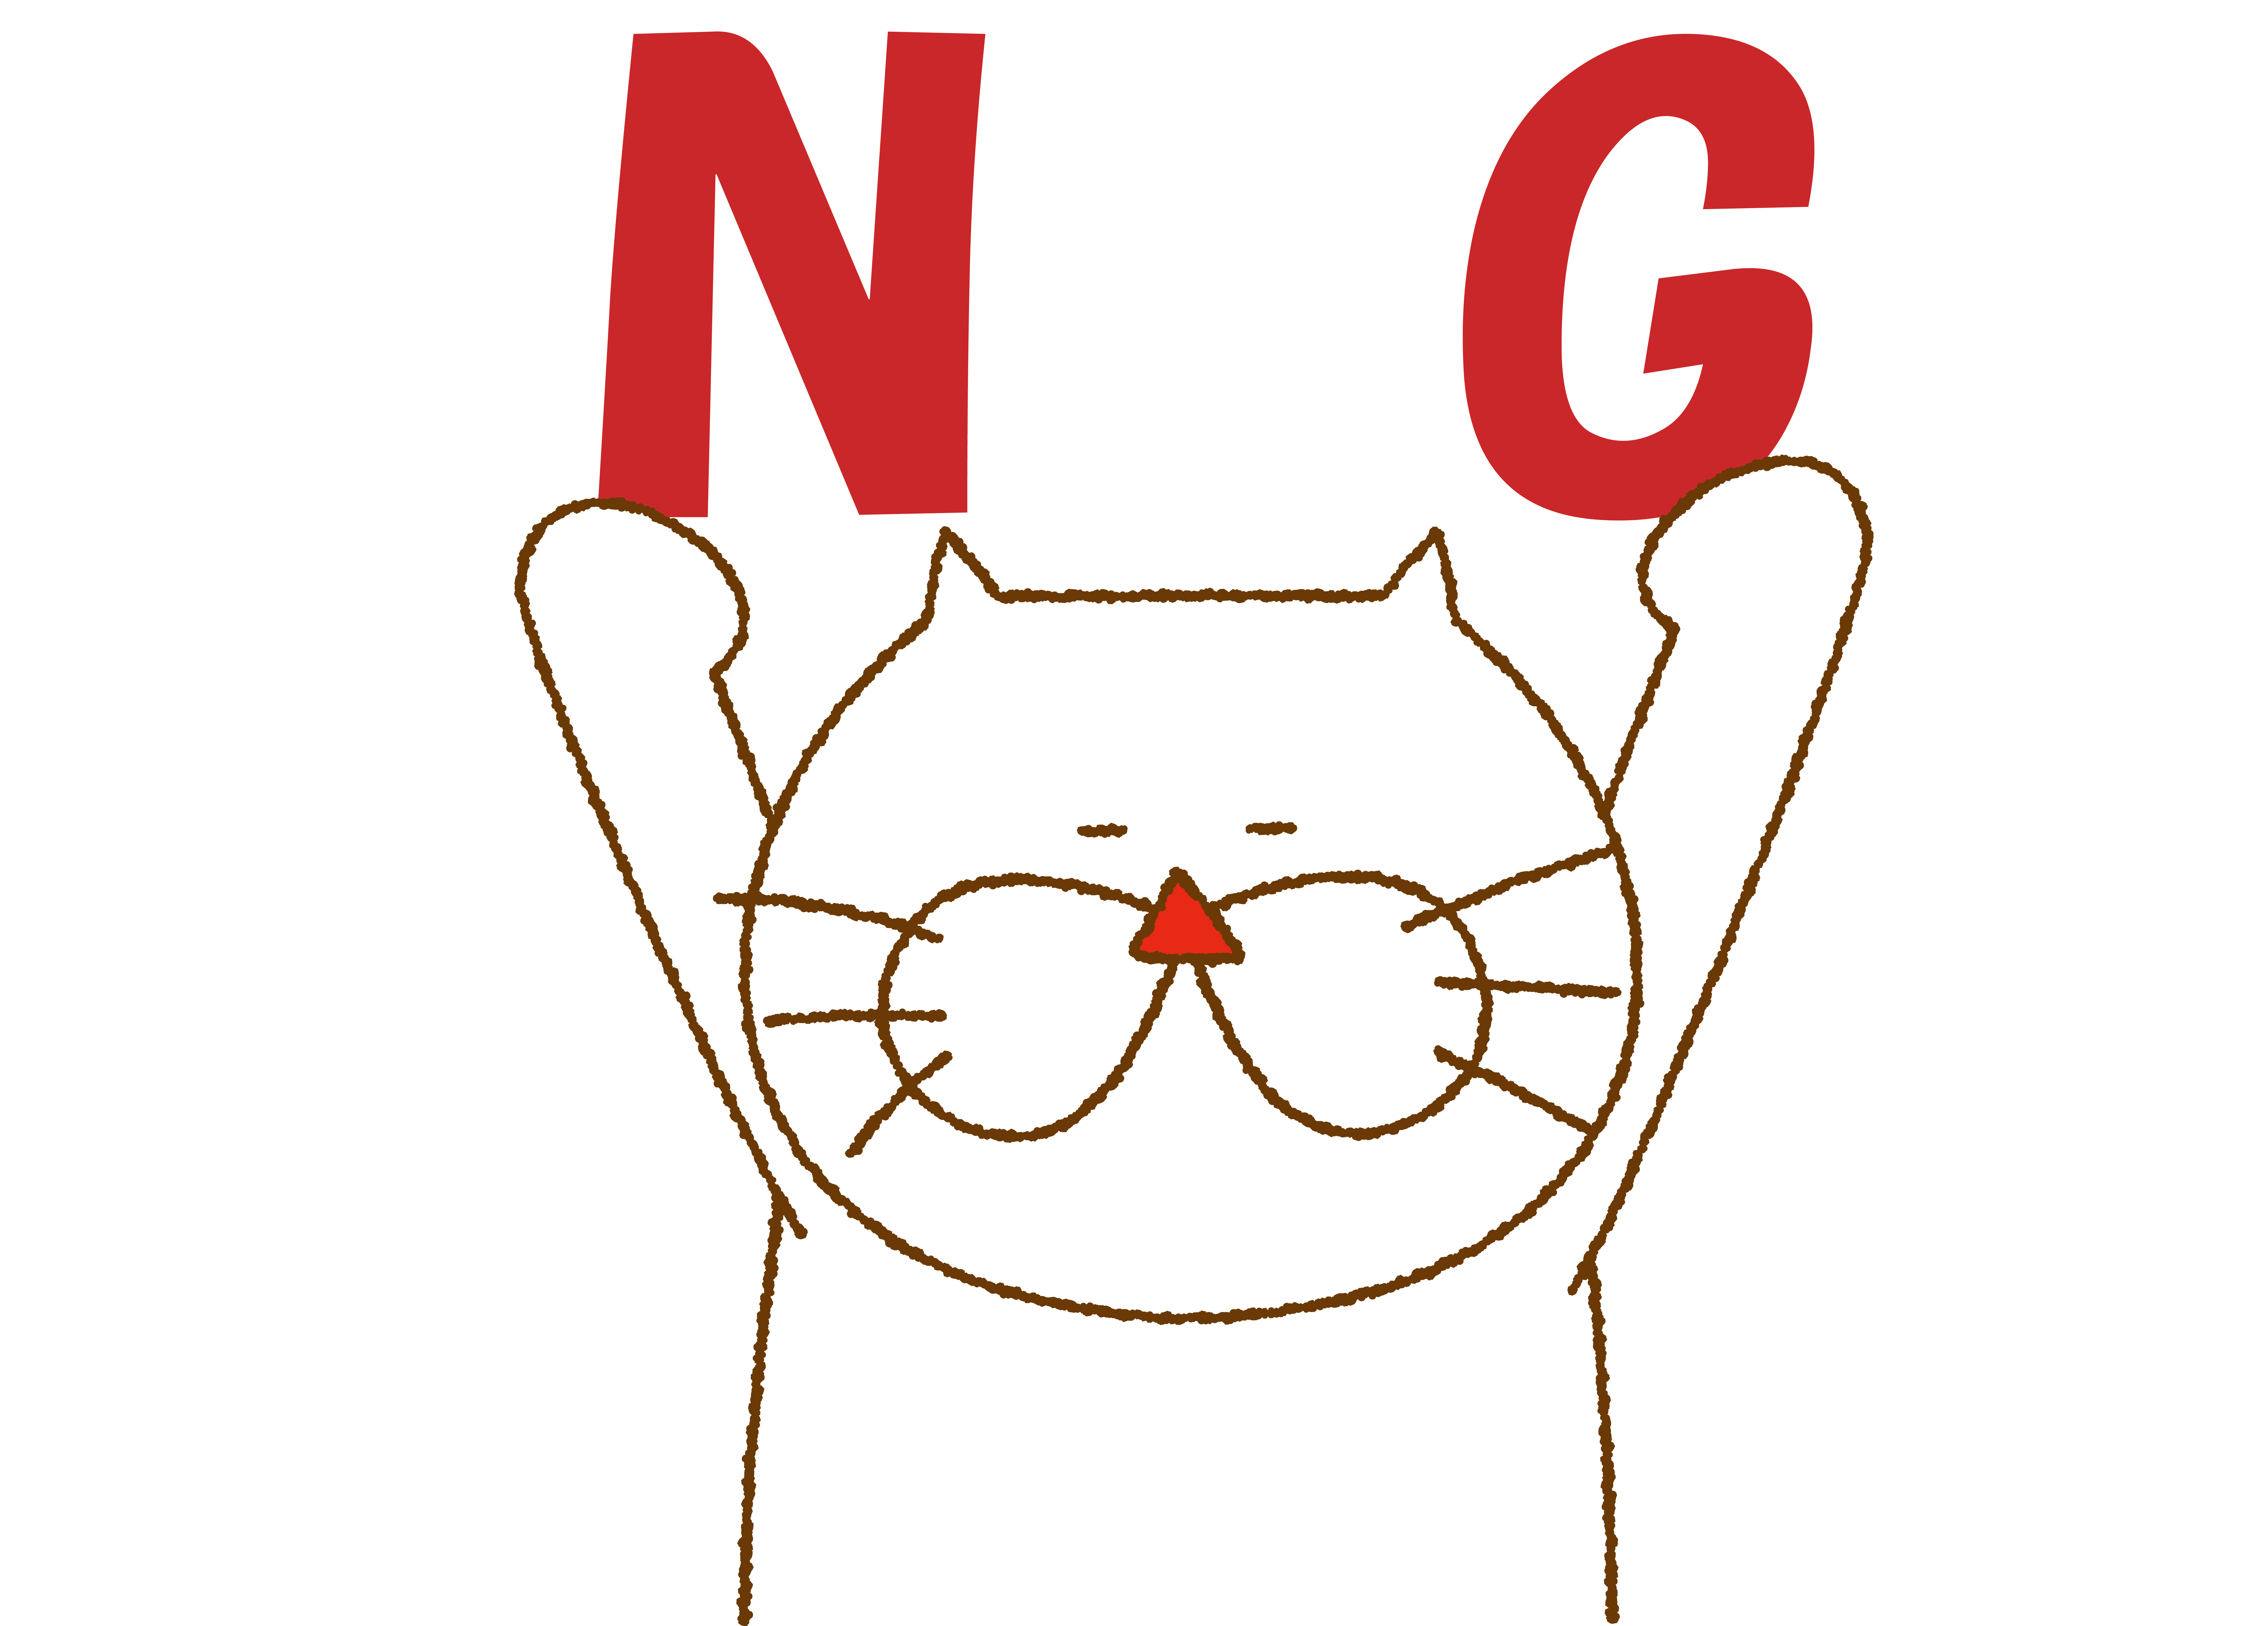 NGという文字を掲げている猫の絵